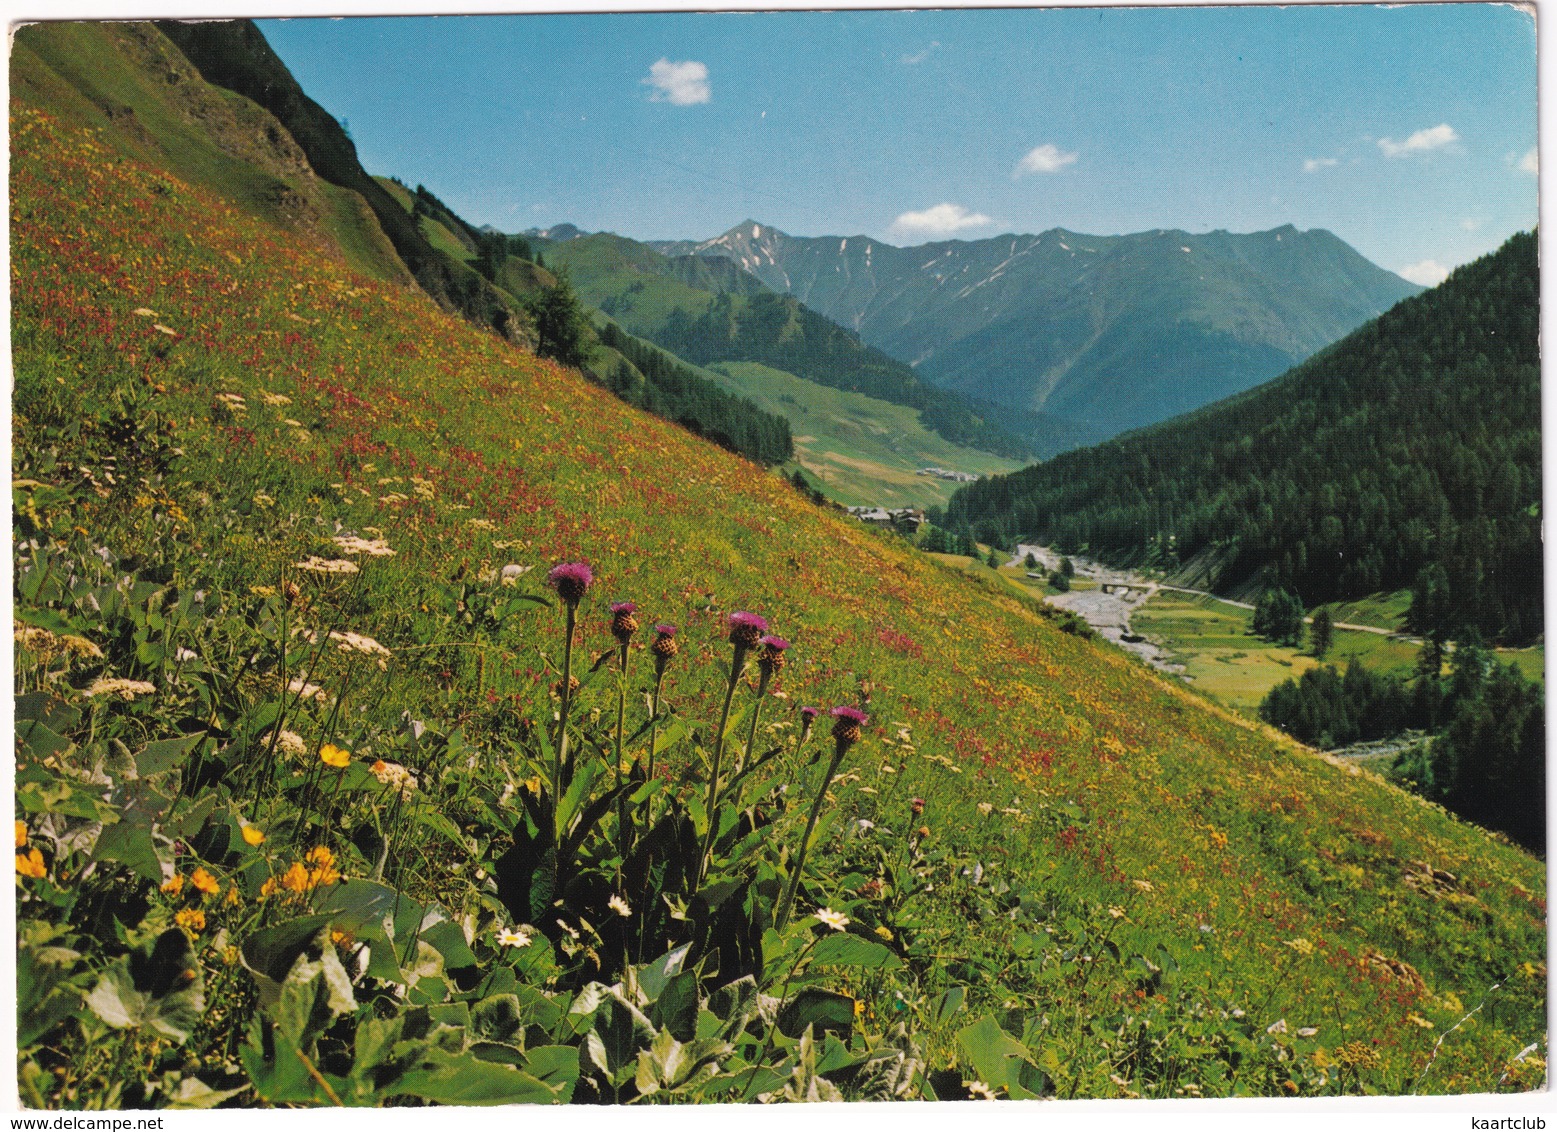 Samnaun 1850 M (Schweiz) Mit Tiroler Alpen - (Suisse/Schweiz) - Samnaun